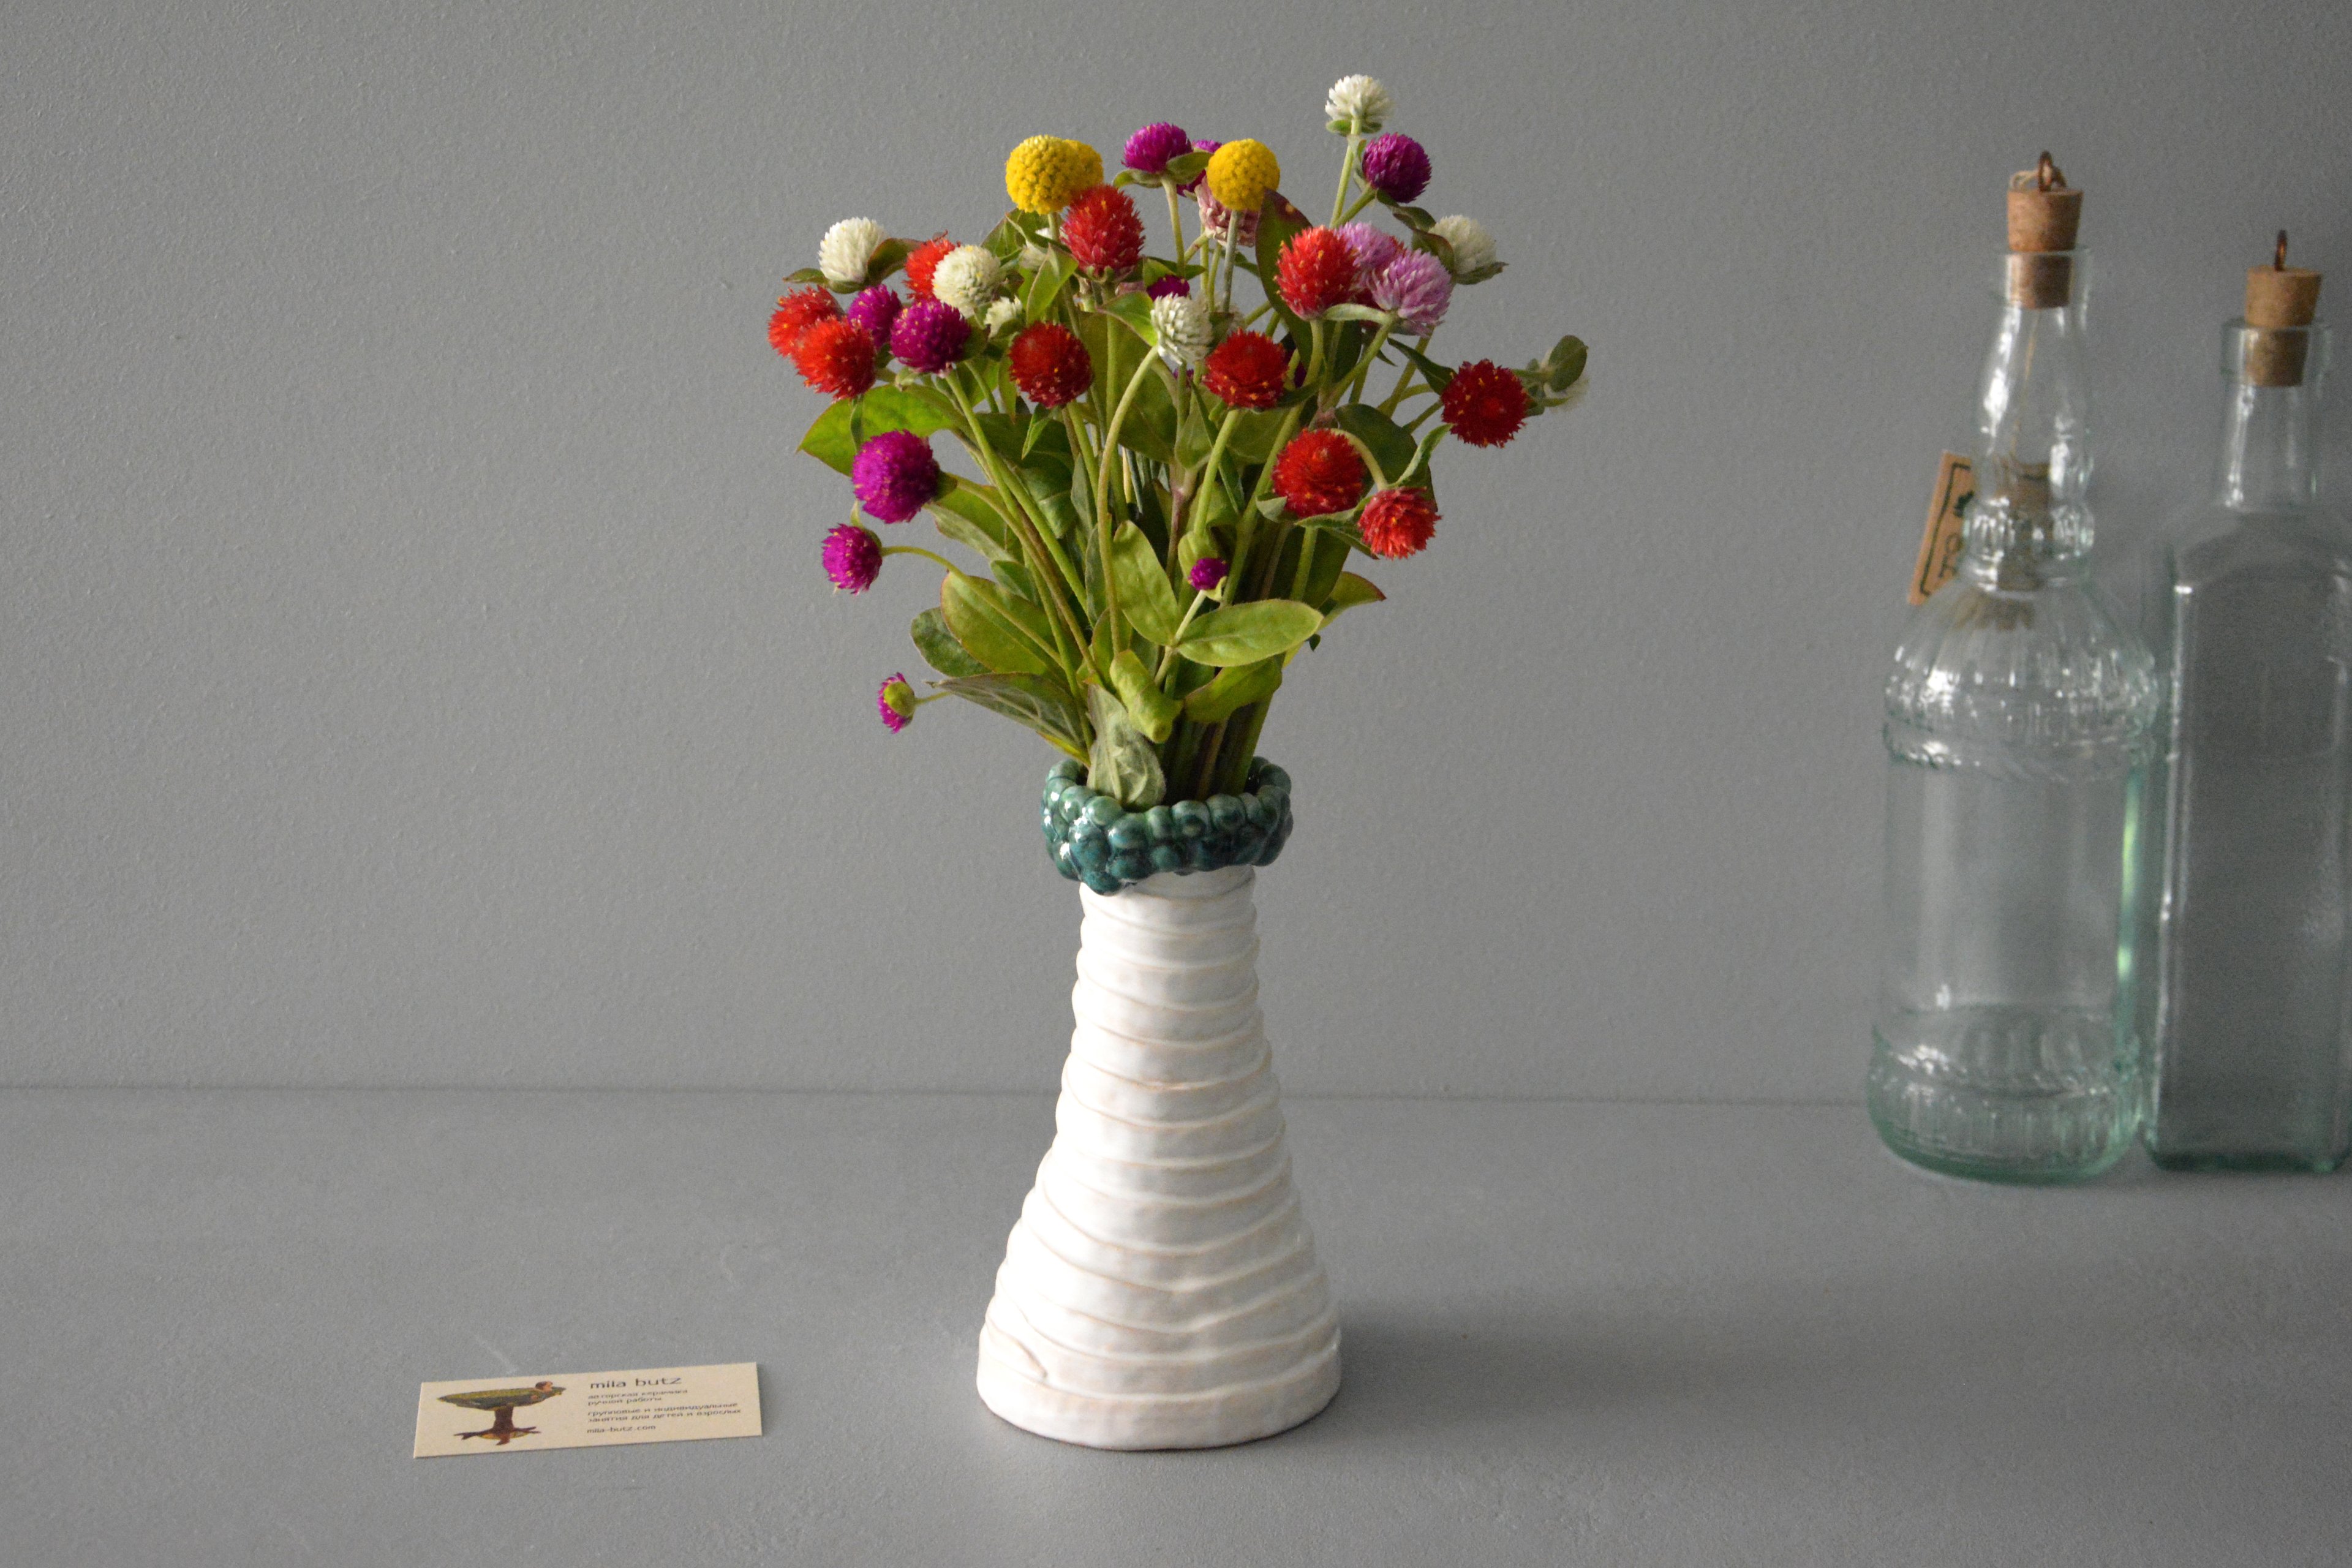 Интерьерная ваза «Жгуты и шарики», высота - 17,5 см. Фото 1207.